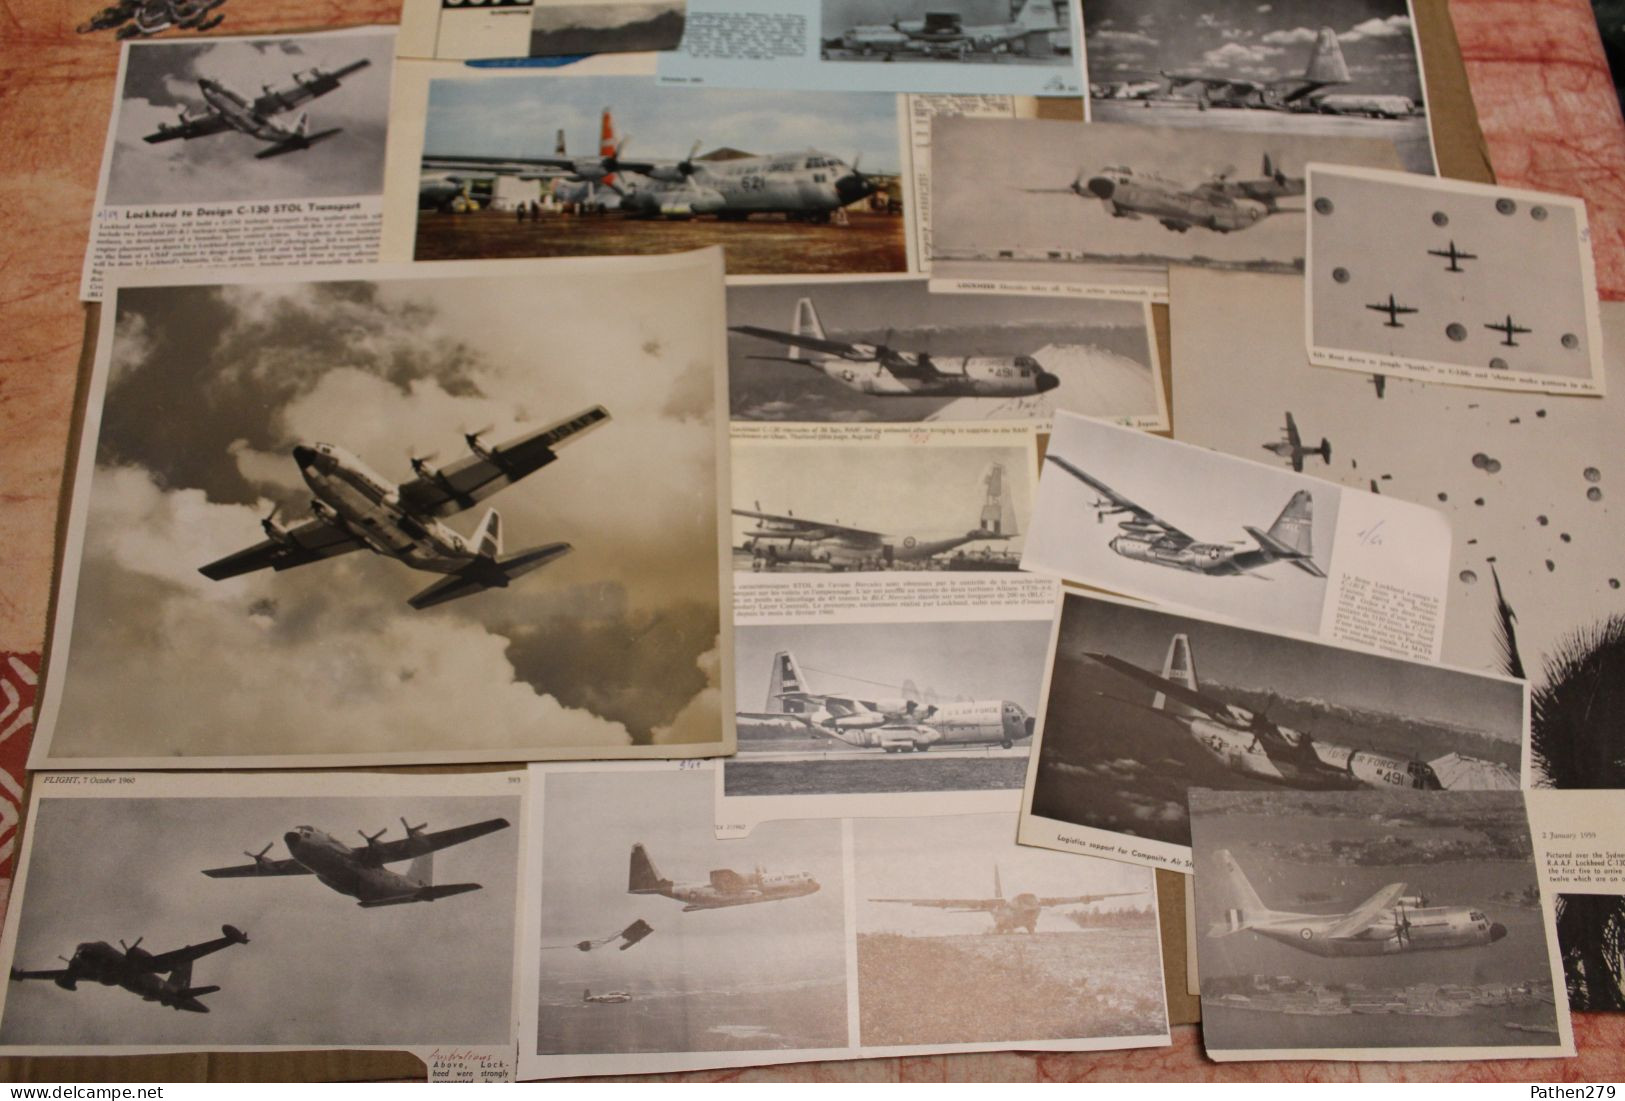 Lot de 679g d'anciennes coupures de presse et photos de l'aéronef américain Lockheed C-130 "Hercules"